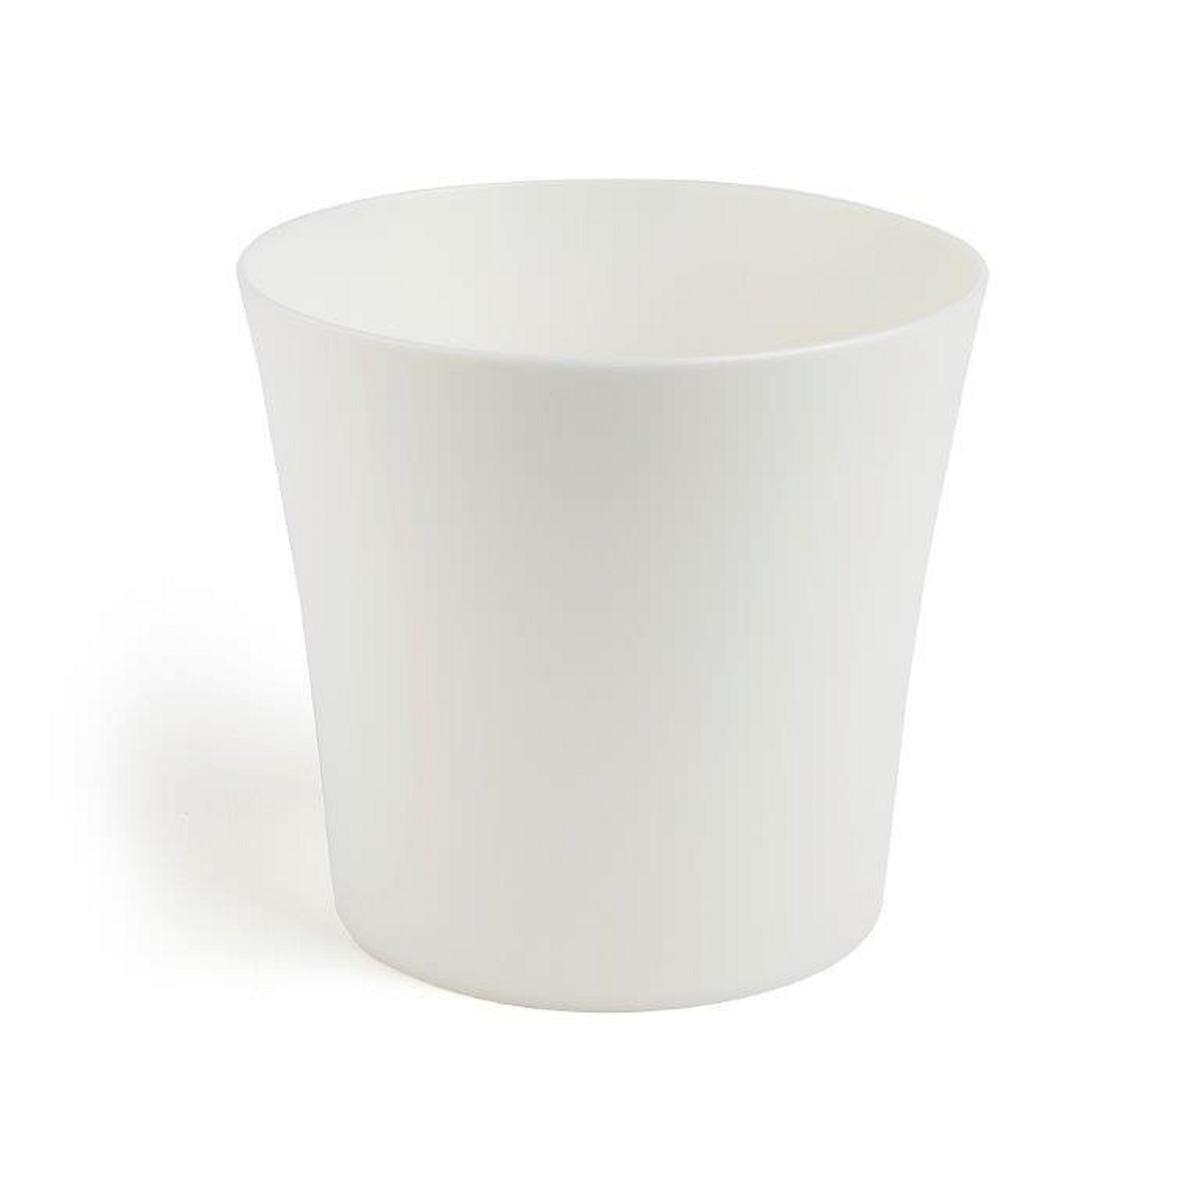 Pot Fiolek - ø 14.5 x 13.4 cm - Blanc - Différents coloris